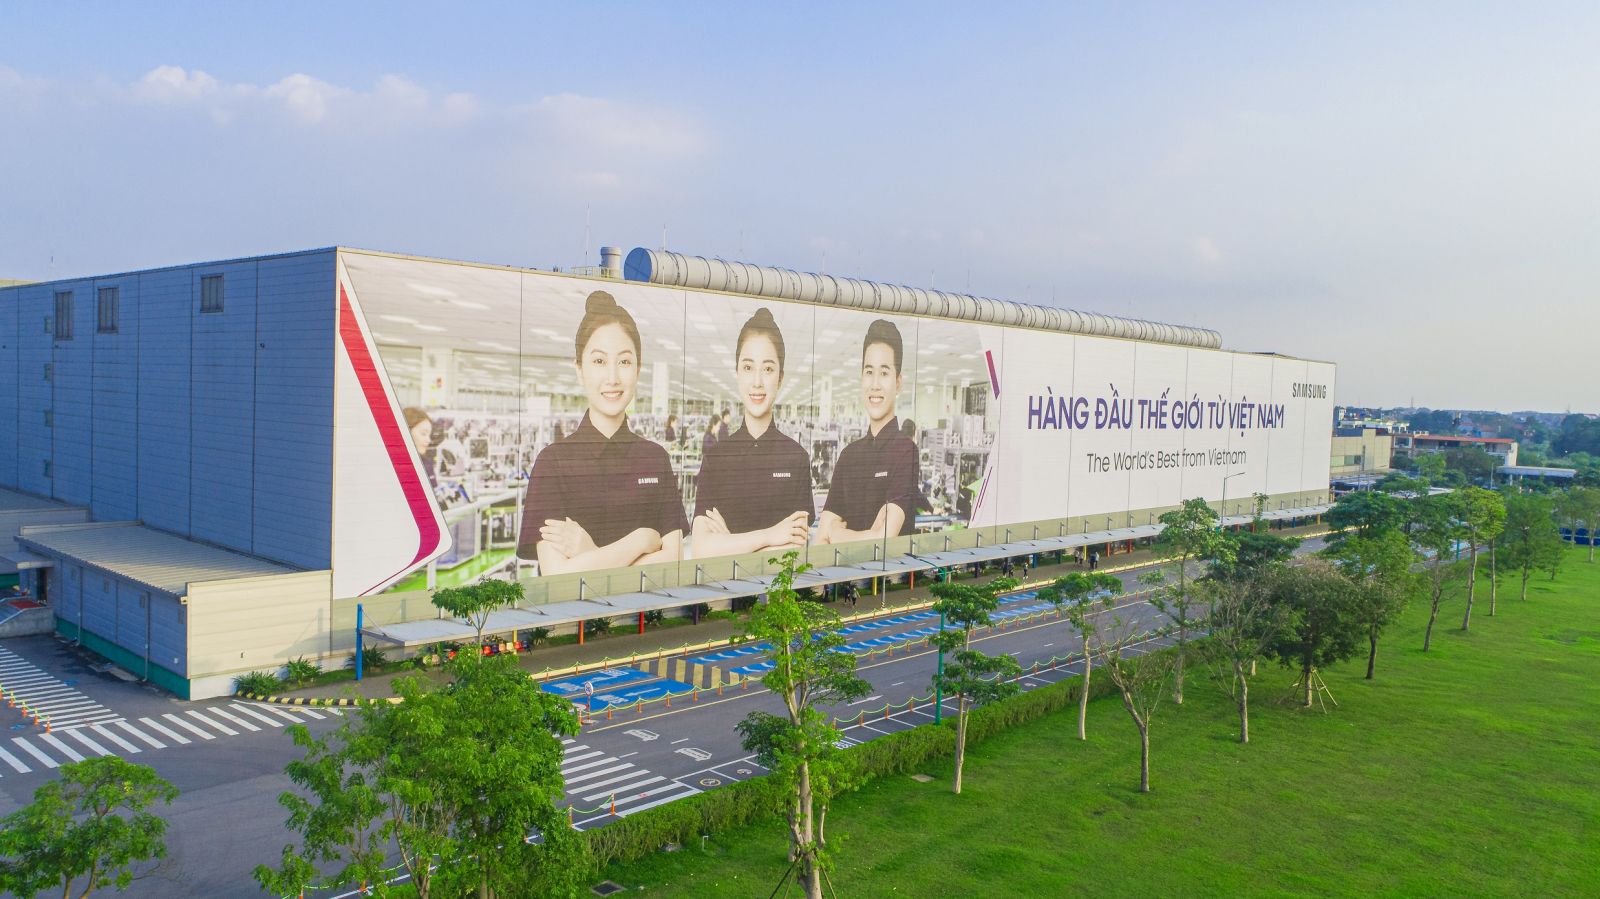 Nhà máy Samsung Electronic Việt Nam Thái Nguyên được đầu tư từ năm 2013 đến nay, đã tạo nên bước đột phá cho quá trình công nghiệp hóa, chuyển đổi cơ cấu lao động trên địa bàn tỉnh Thái Nguyên